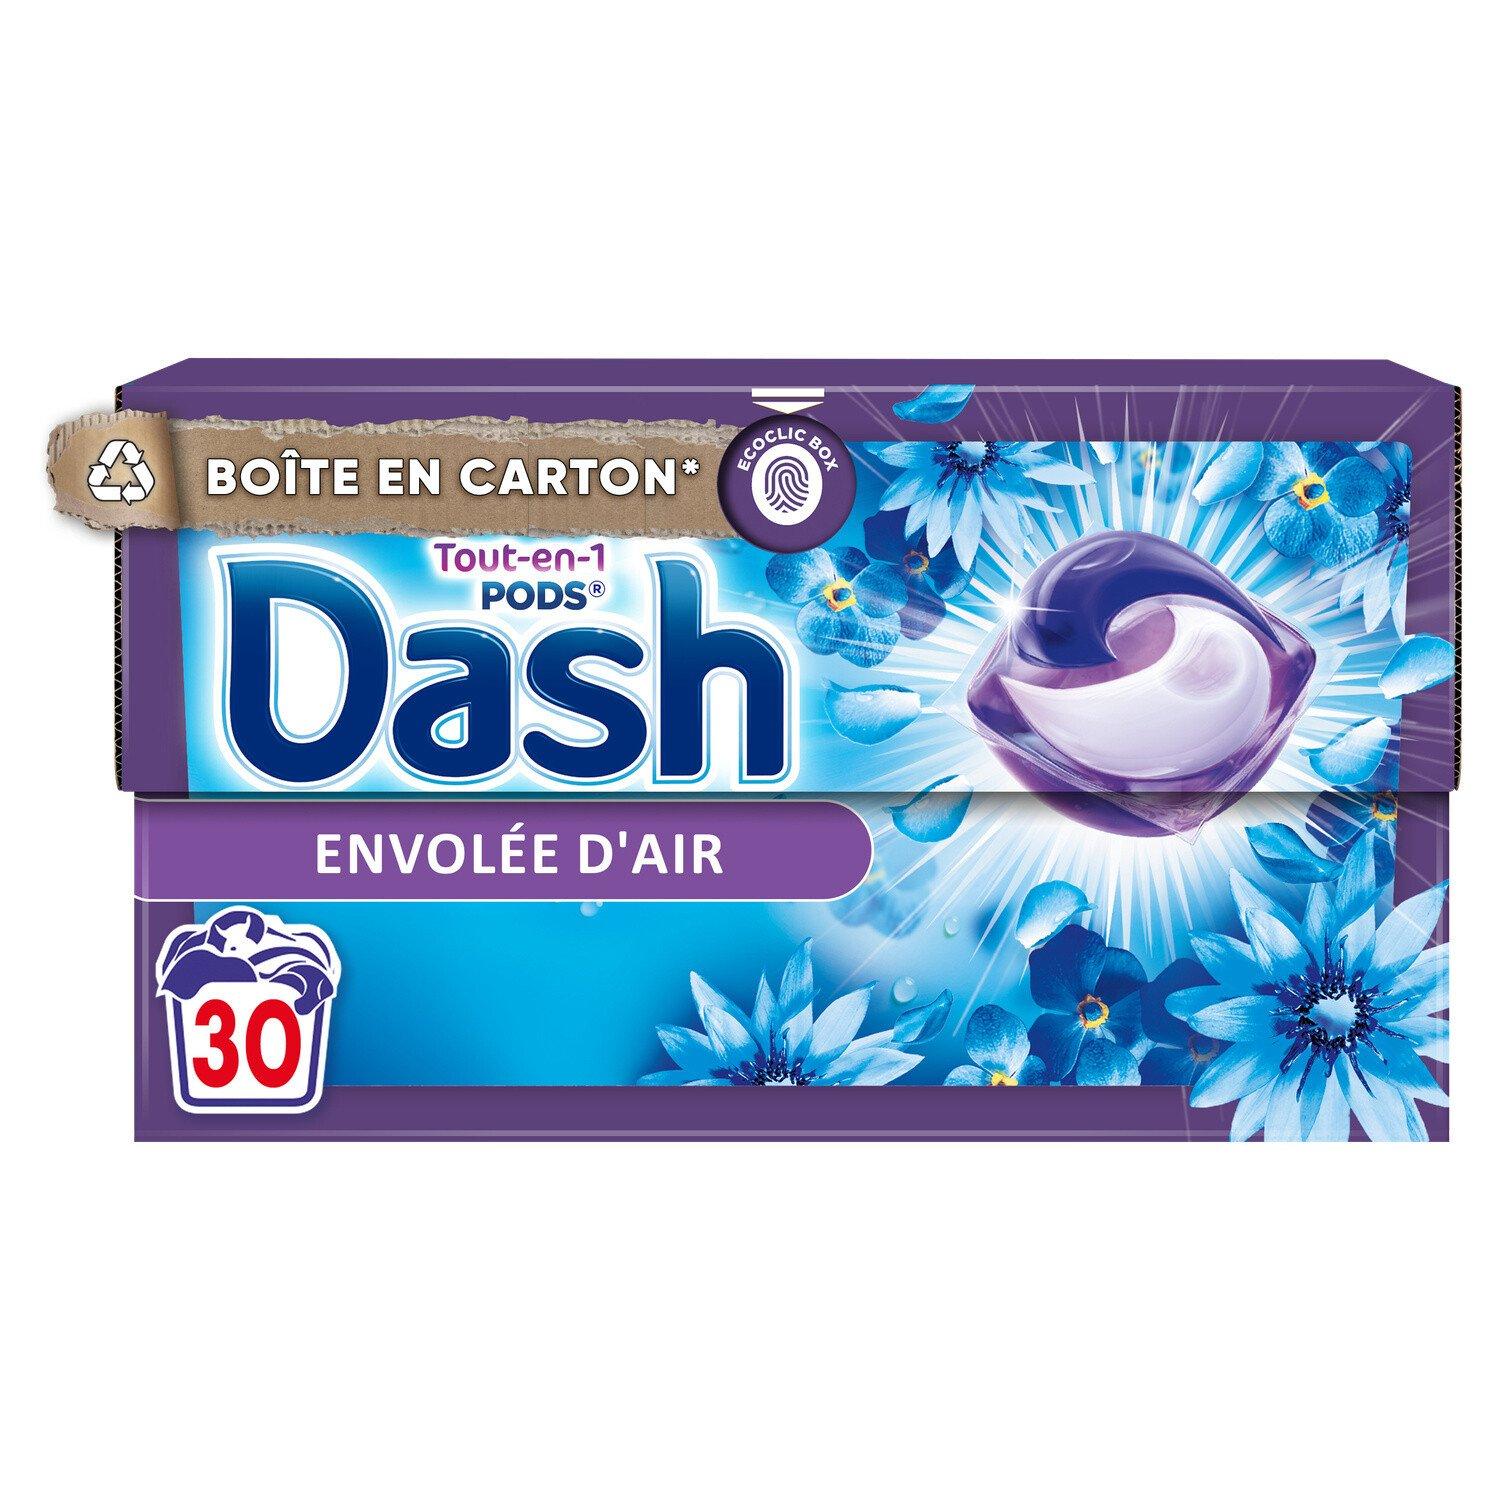 Dash Tout-en-1 Pods - La collection avec Lenor - Envolée d'Air